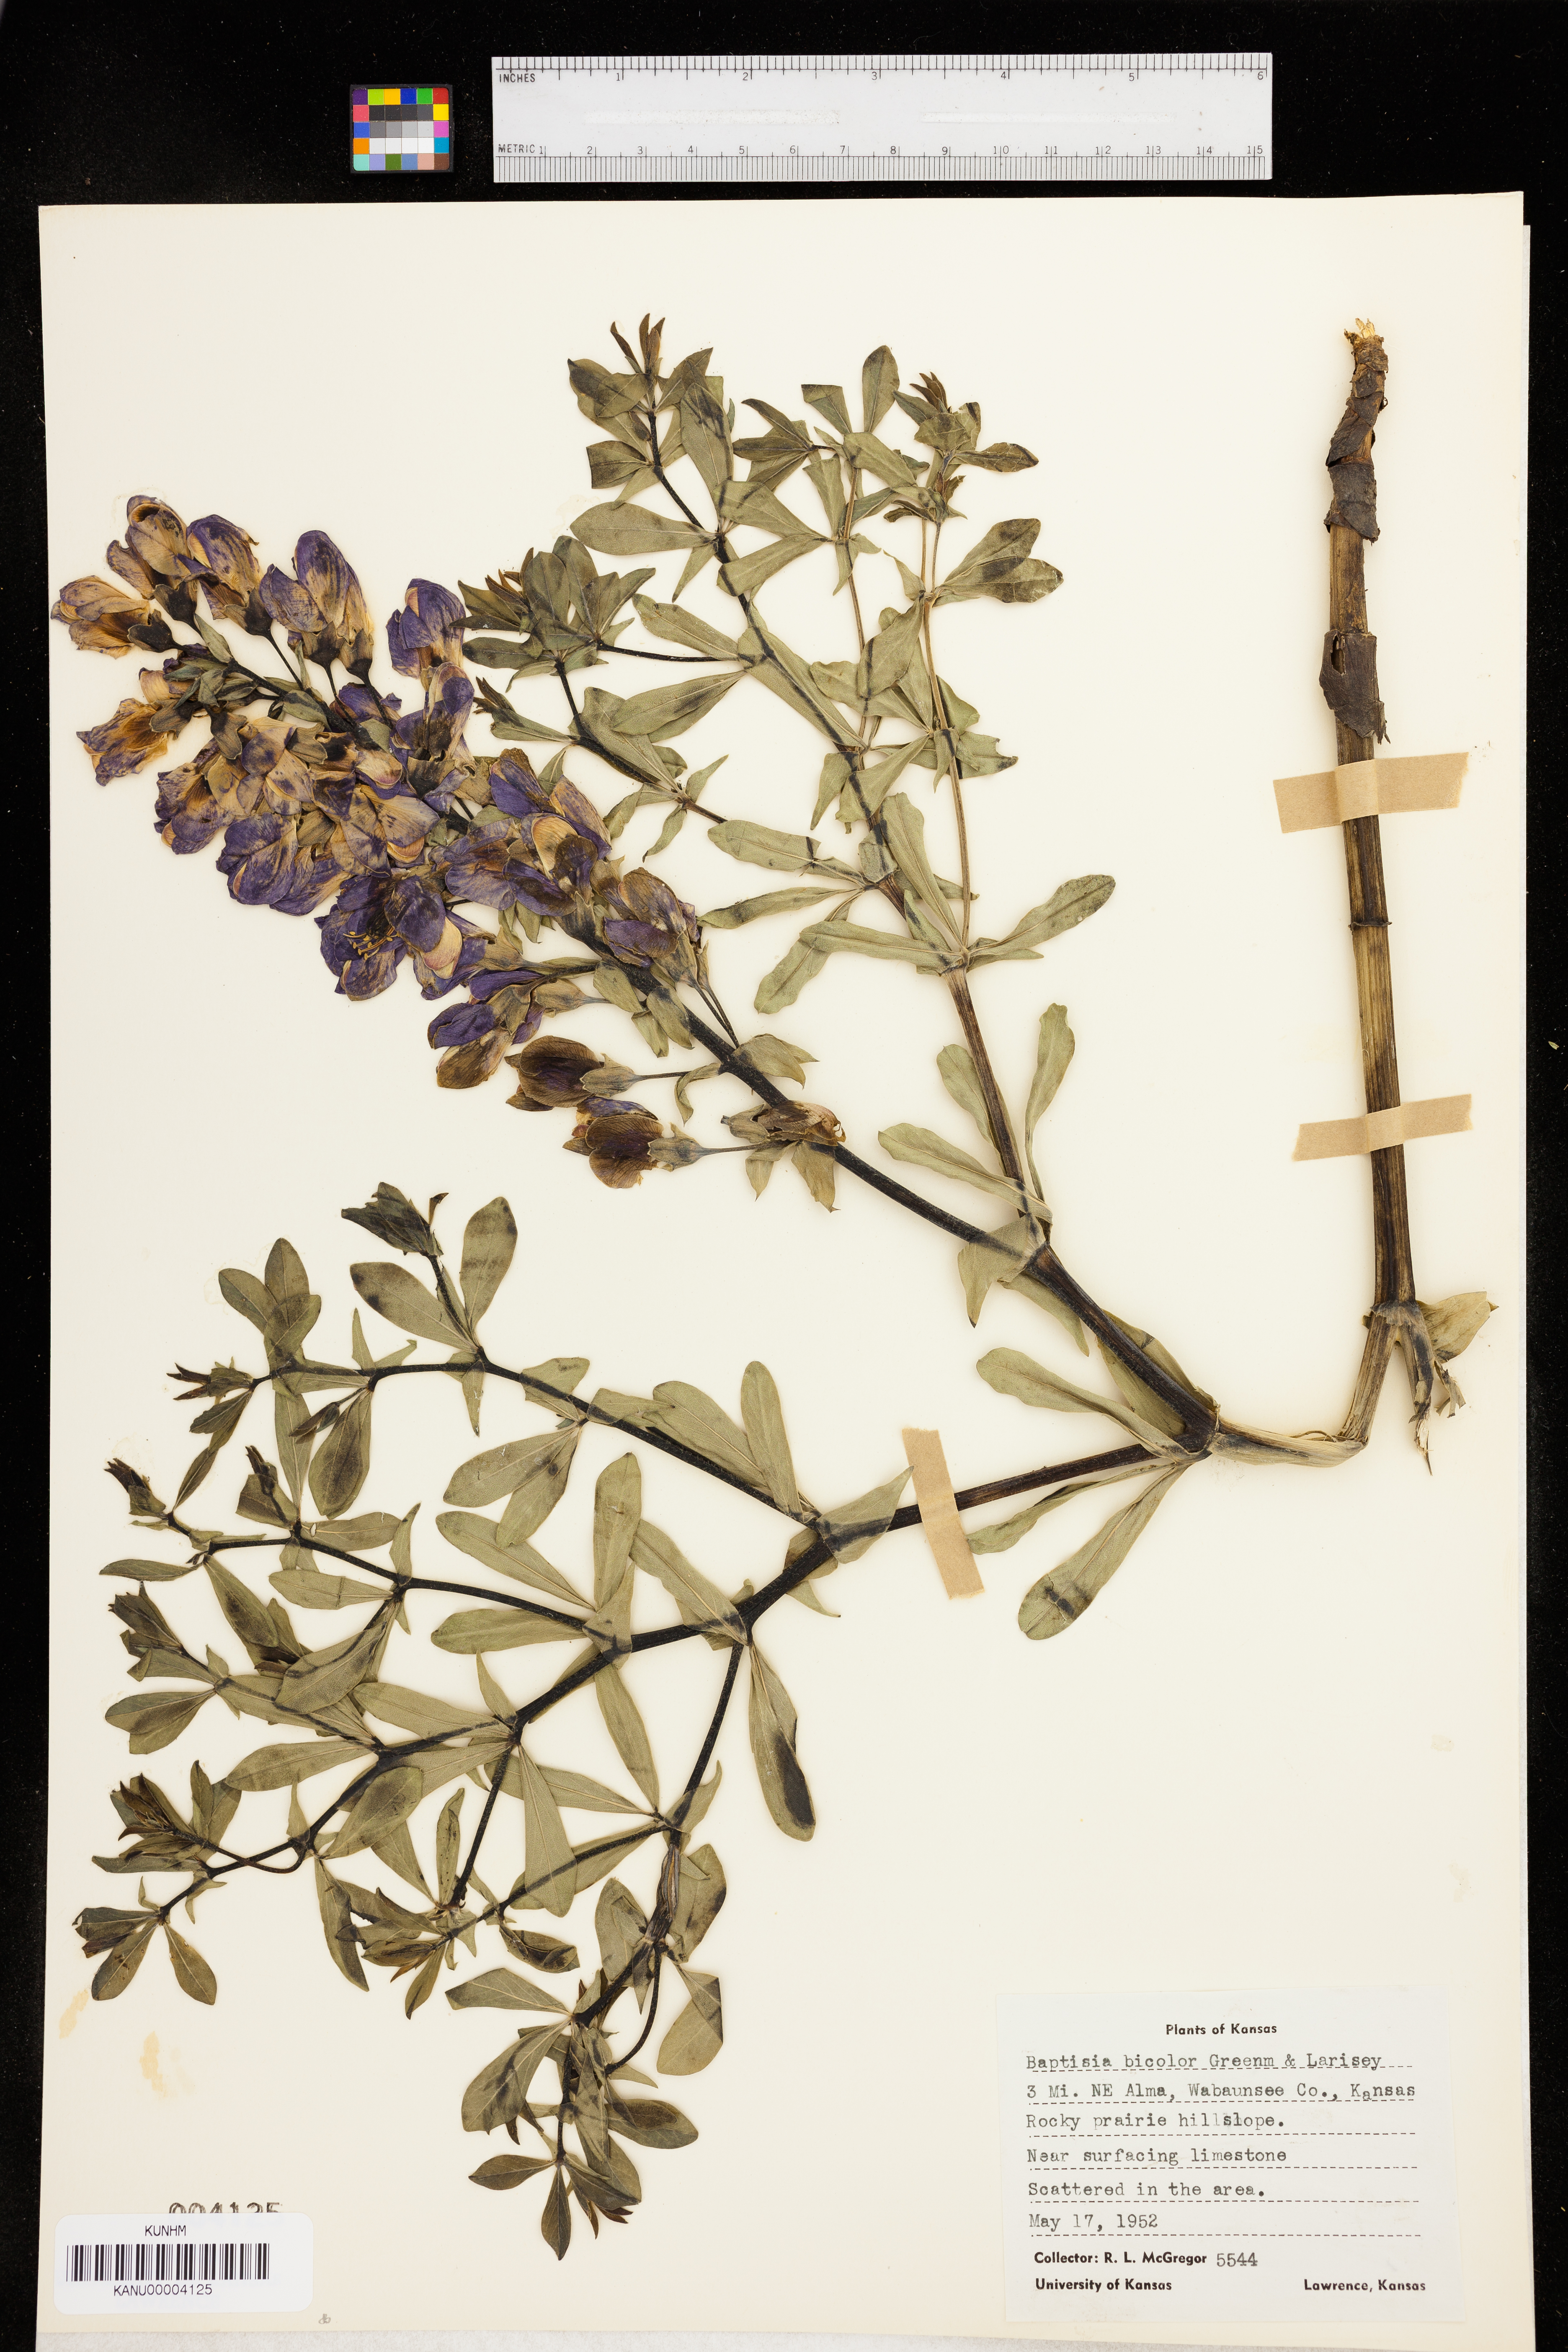 Baptisia bicolor image